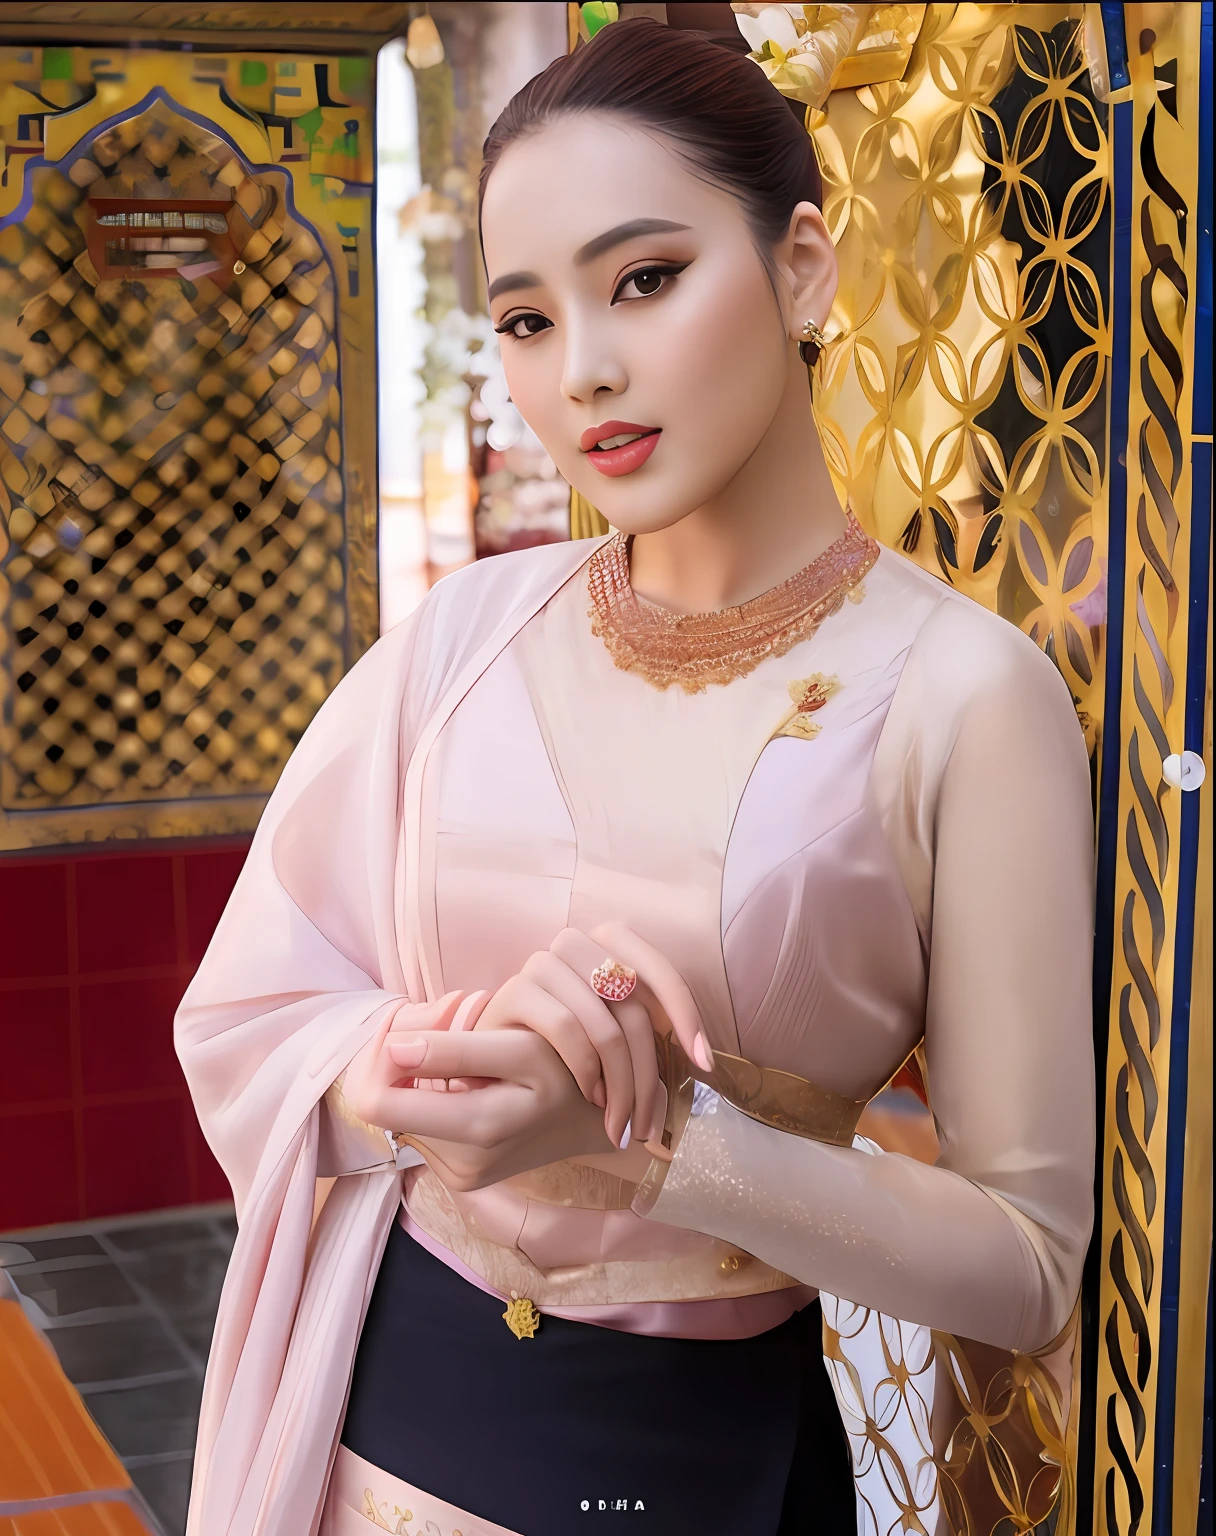 穿着粉色上衣和黑色裙子的女孩站在金色大门前, 尼万占塔拉, 传统美, 东南亚人长, 素可泰服装, Ao Dai, 迪丽热巴, 明天 特兰兄弟, 穿着华丽的丝绸衣服